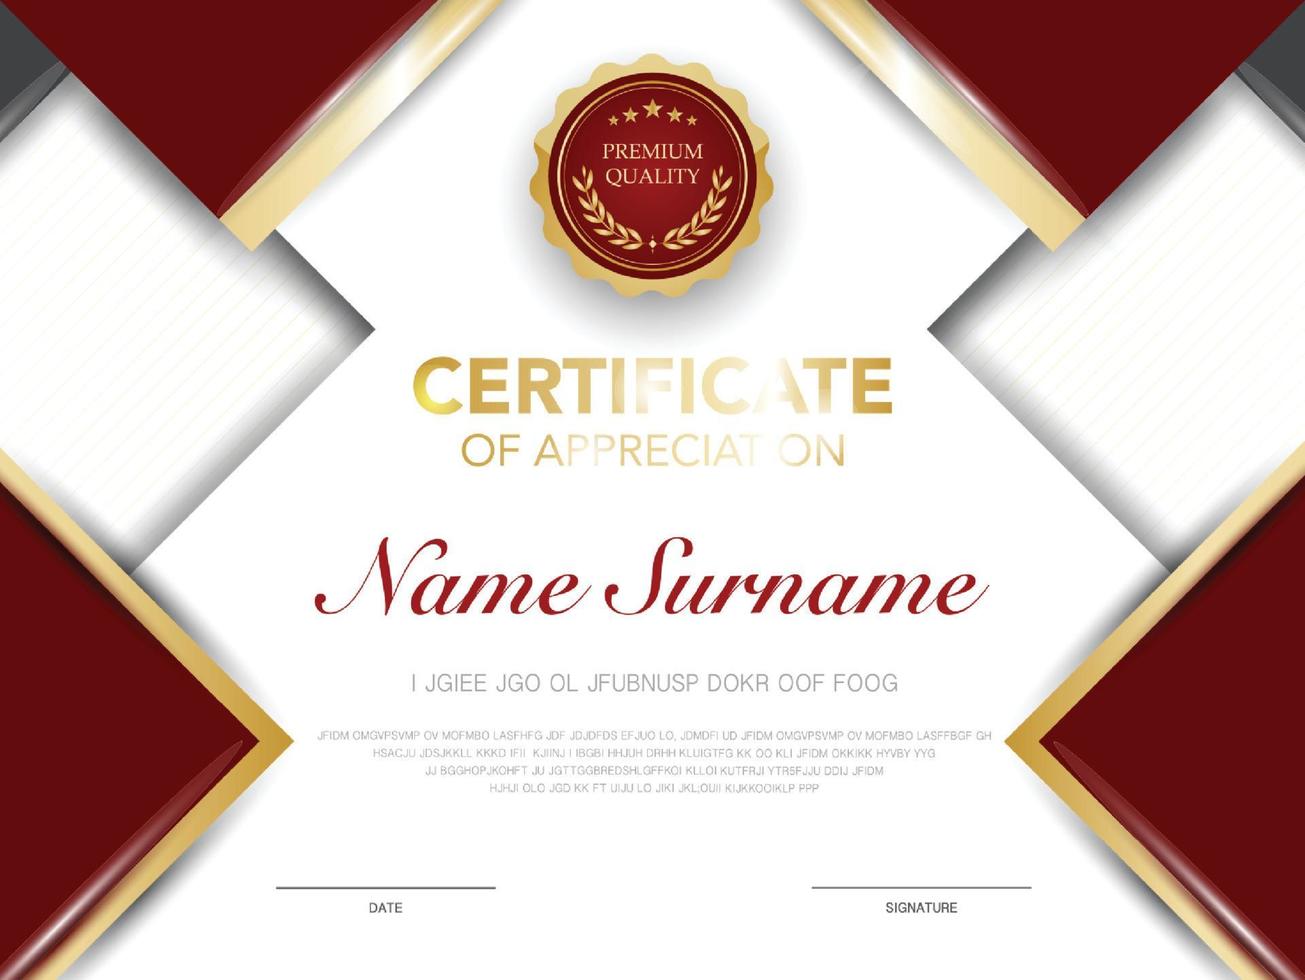 modelo de certificado de diploma cor vermelha e dourada com luxo e estilo moderno imagem vetorial vetor